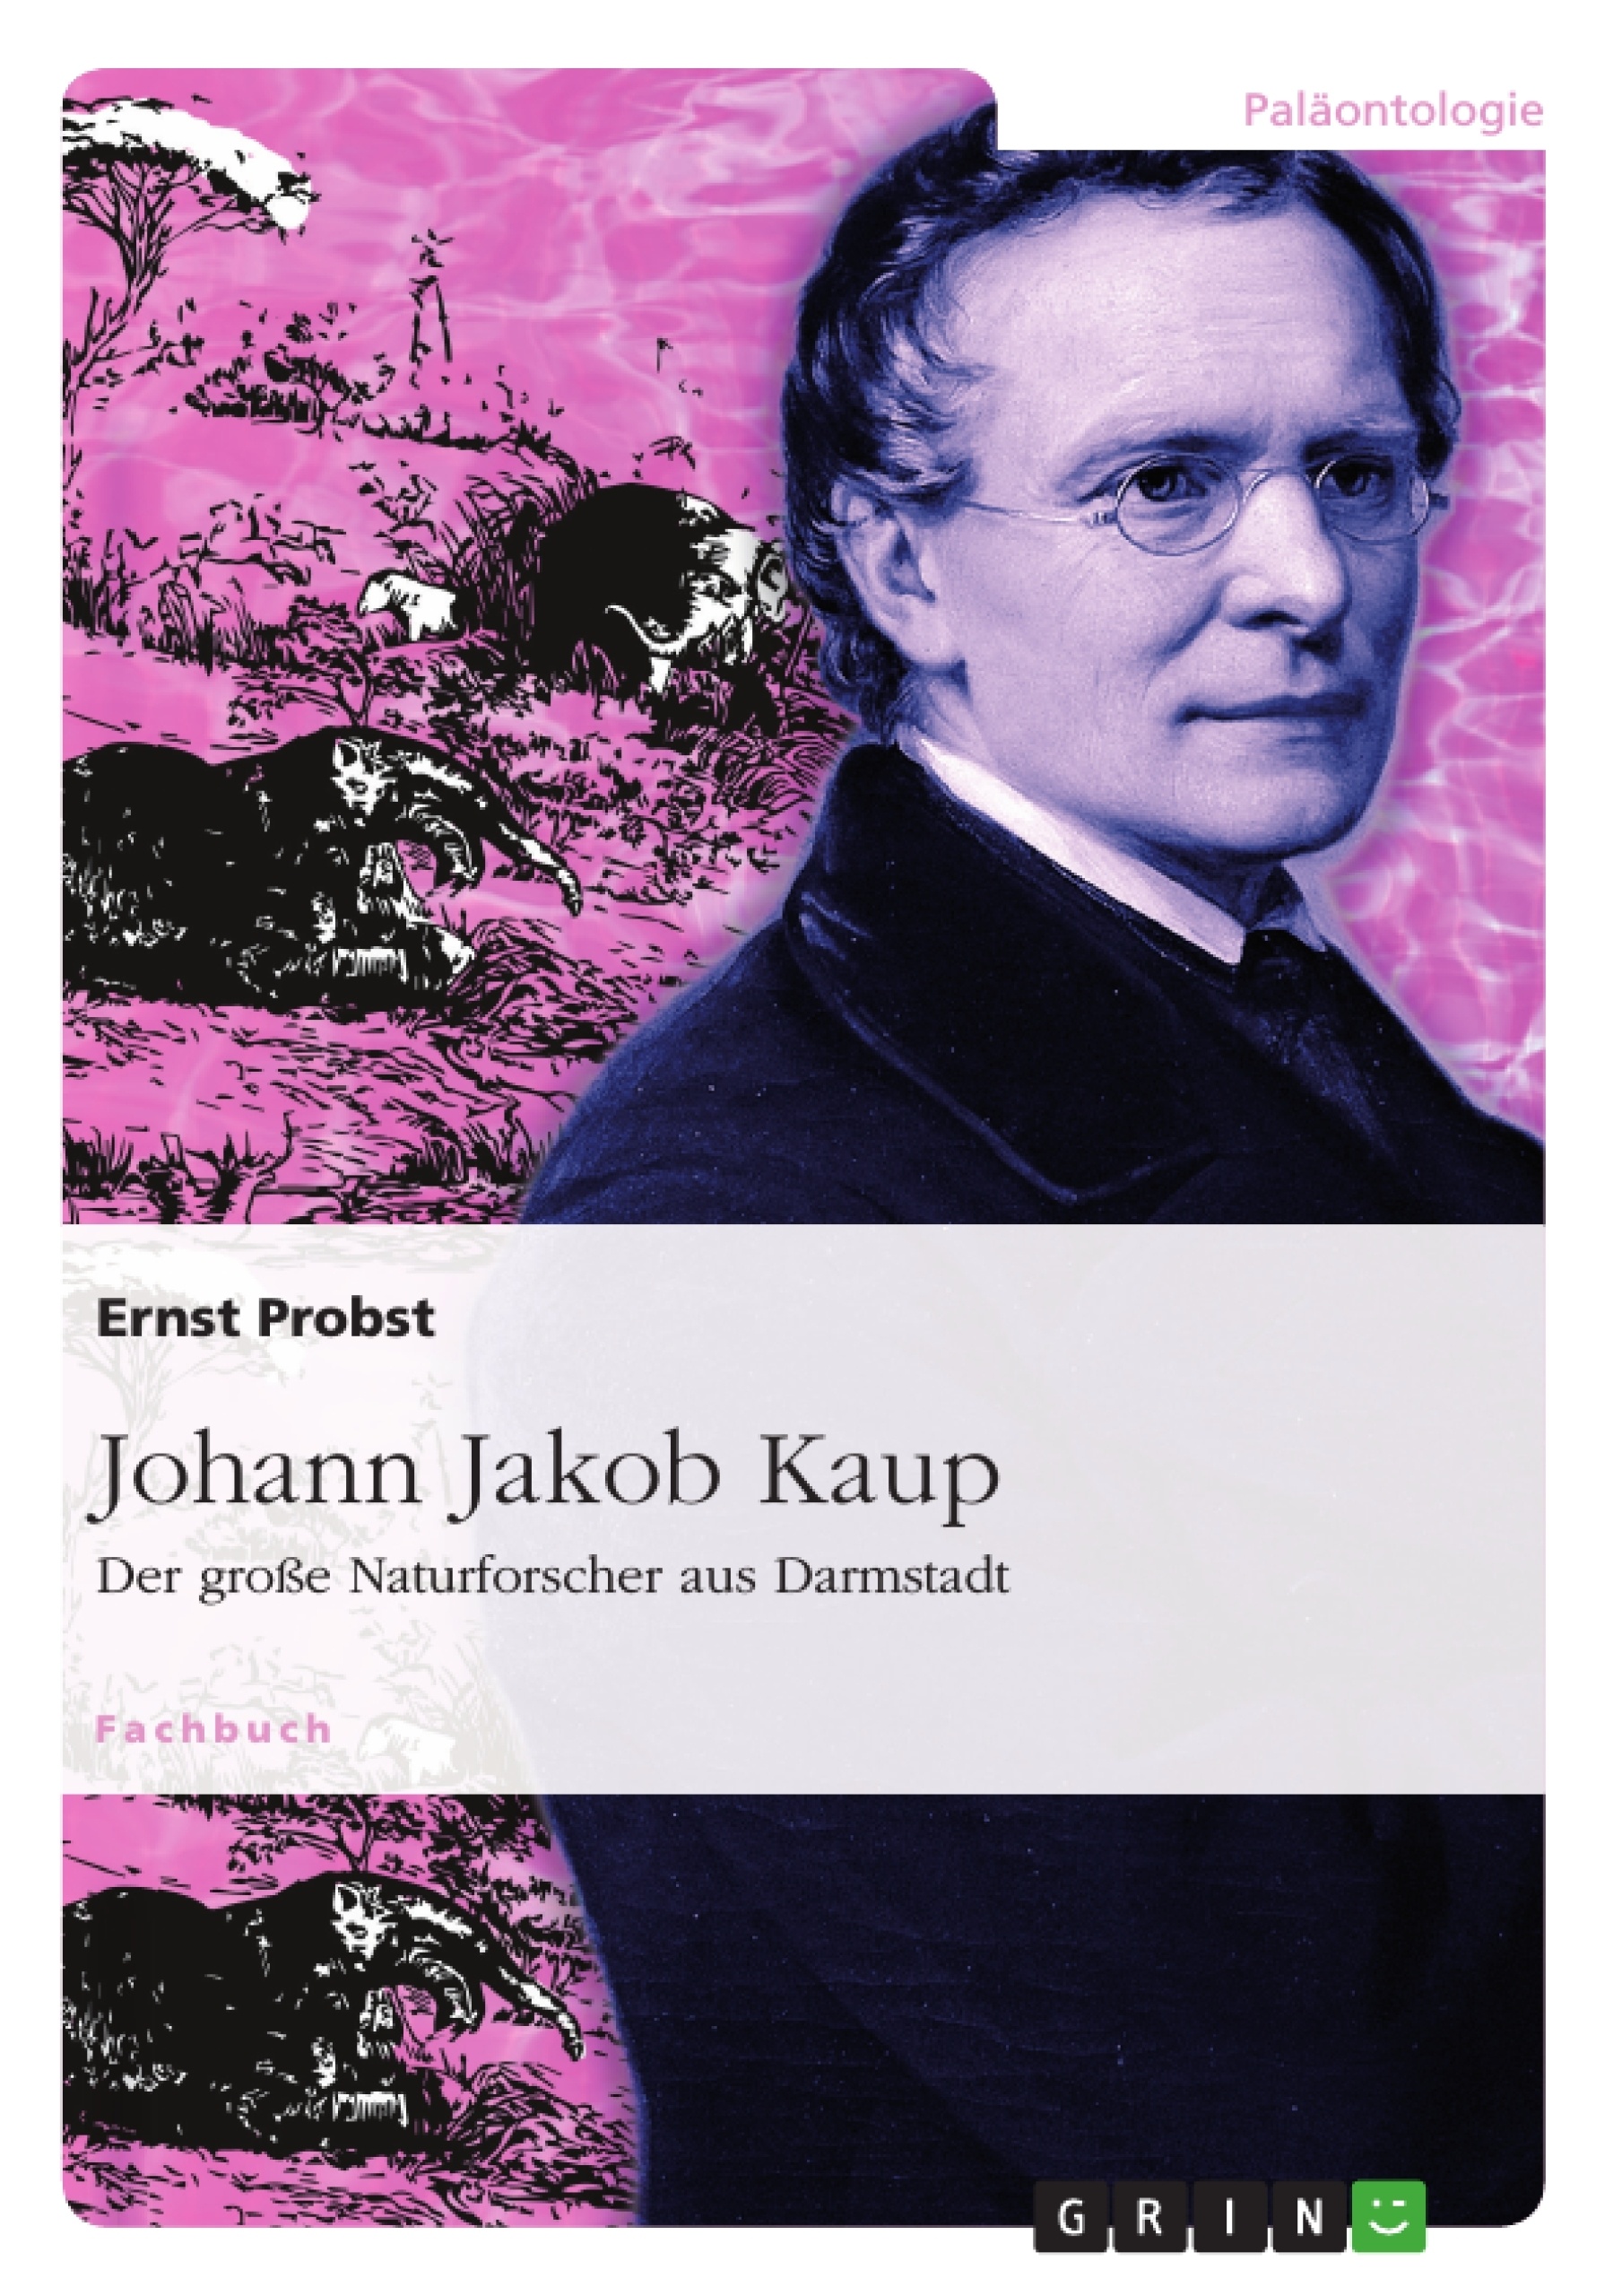 Title: Johann Jakob Kaup - Der große Naturforscher aus Darmstadt